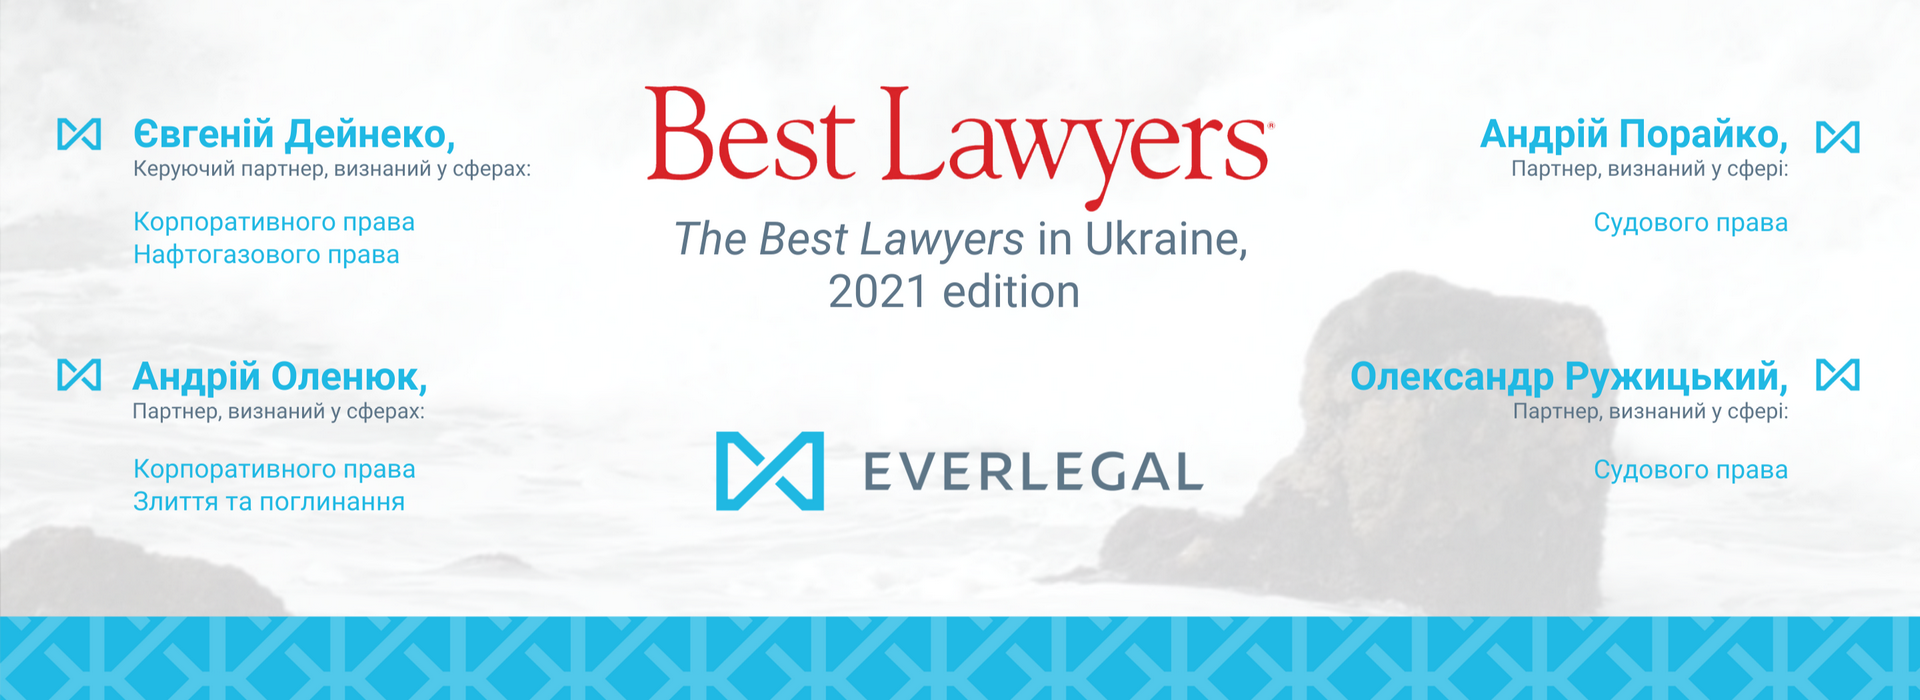 Партнери EVERLEGAL рекомендовані рейтингом The Best Lawyers 2021 в Україні